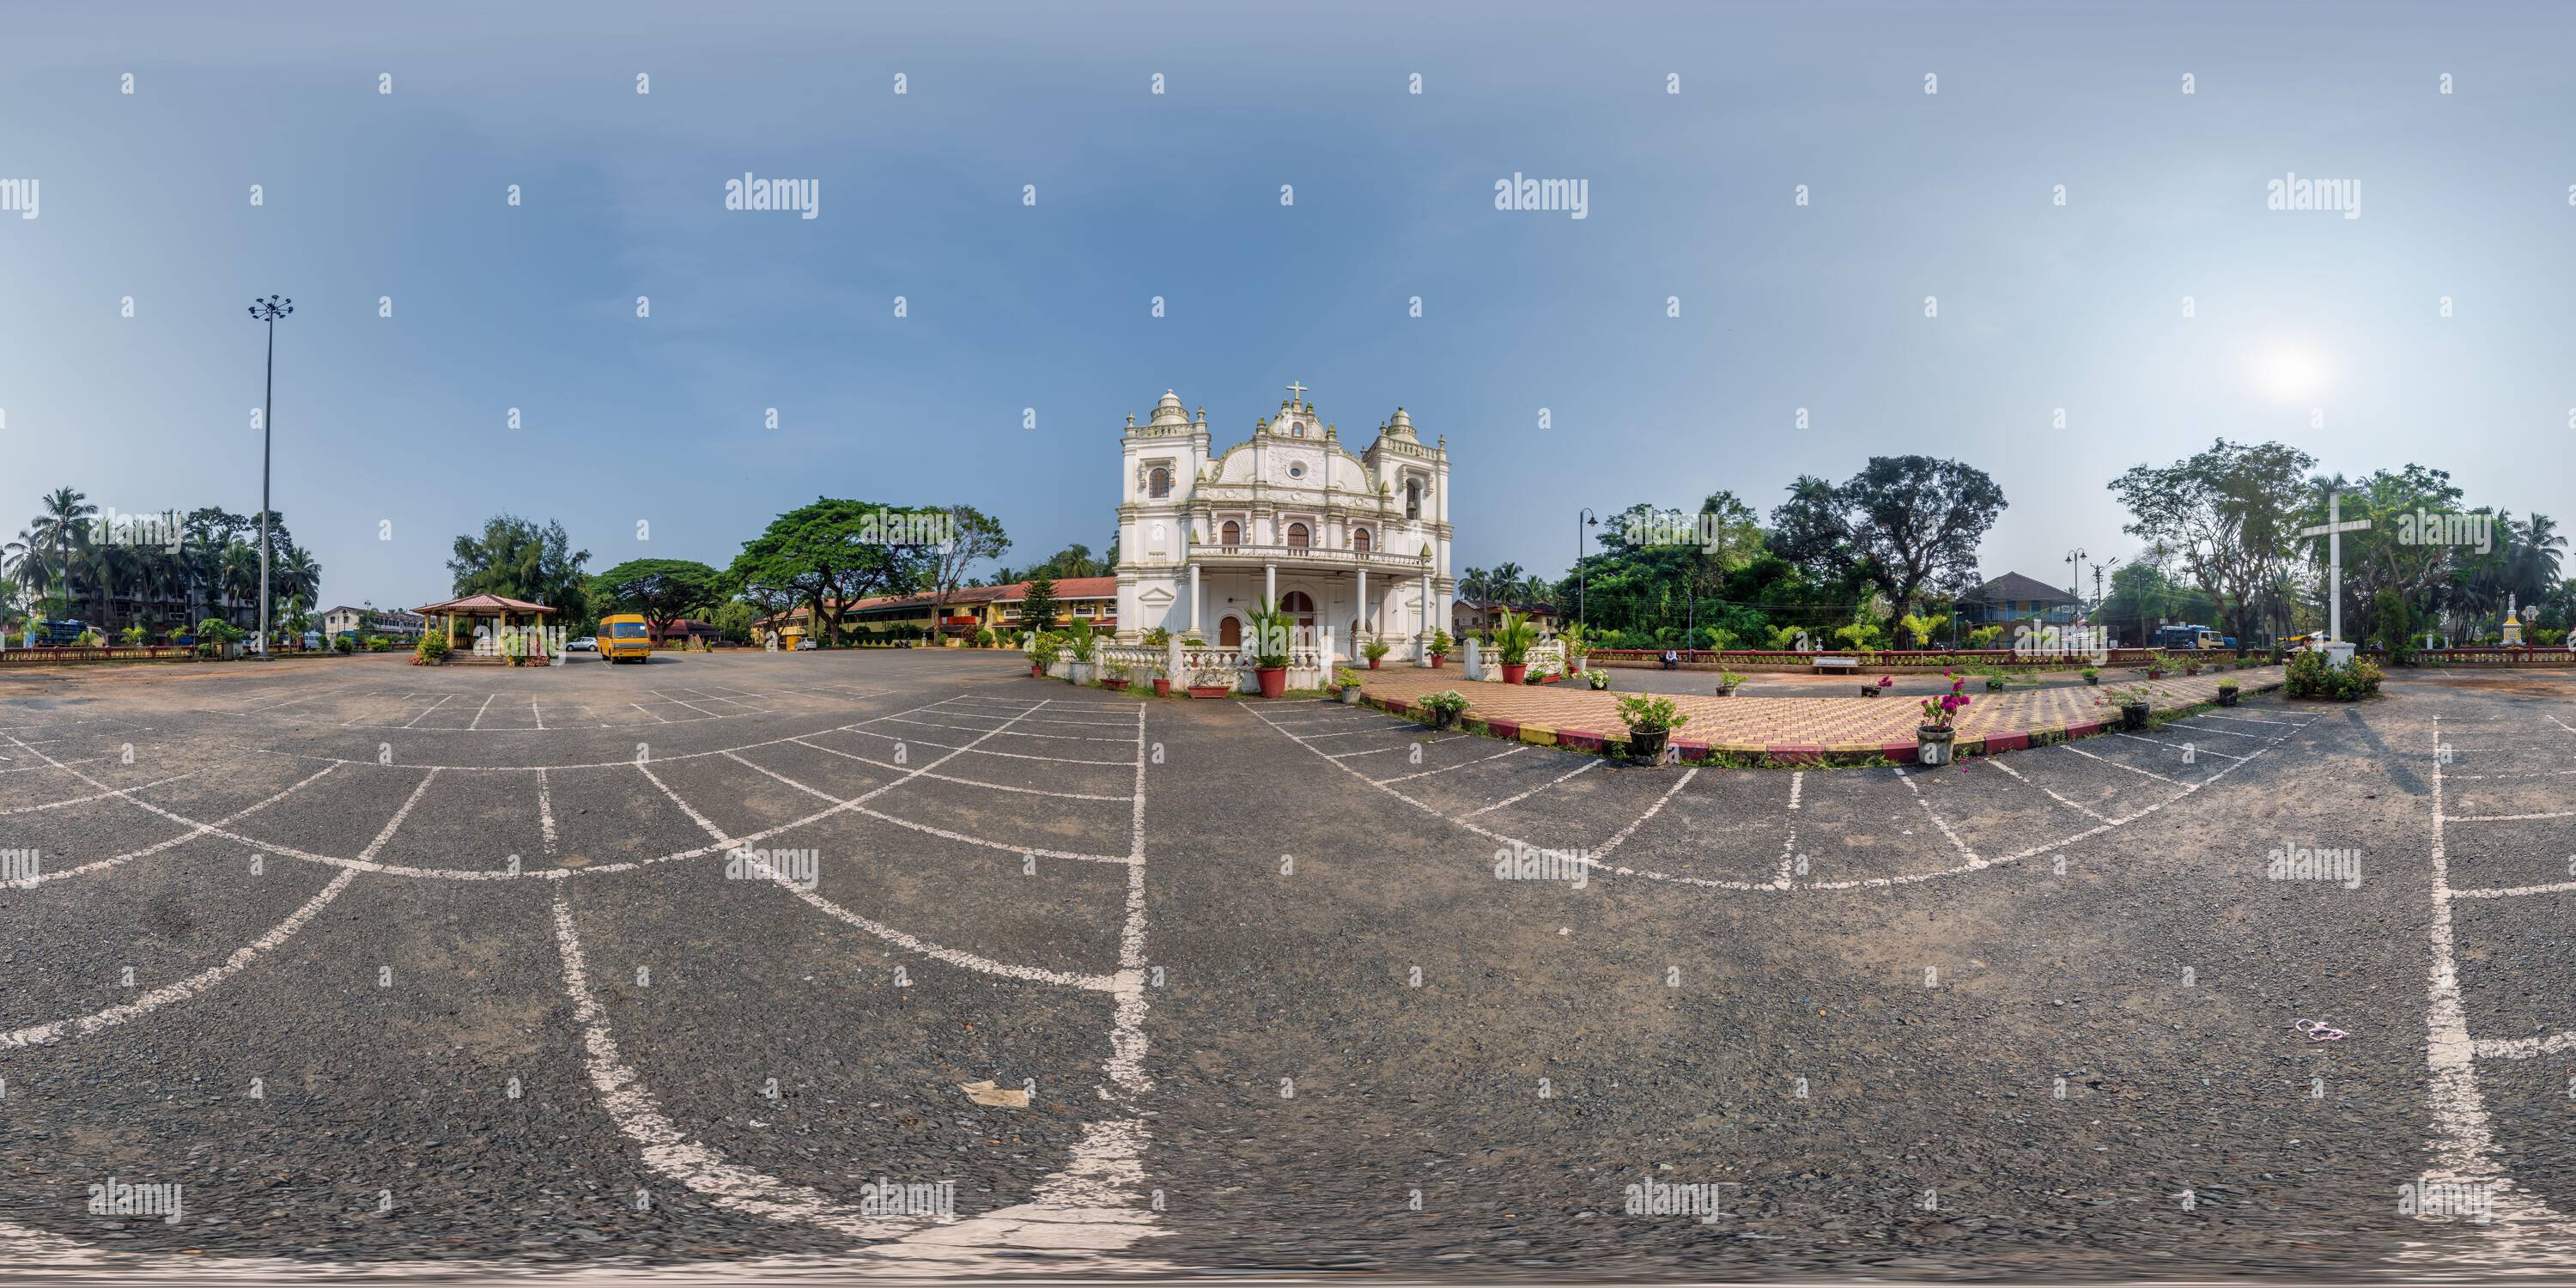 Vue panoramique à 360° de Full hdri 360 panorama de l'église catholique du portugal dans la jungle parmi les palmiers dans le village tropical indien en projection équirectangulaire avec zénith et n